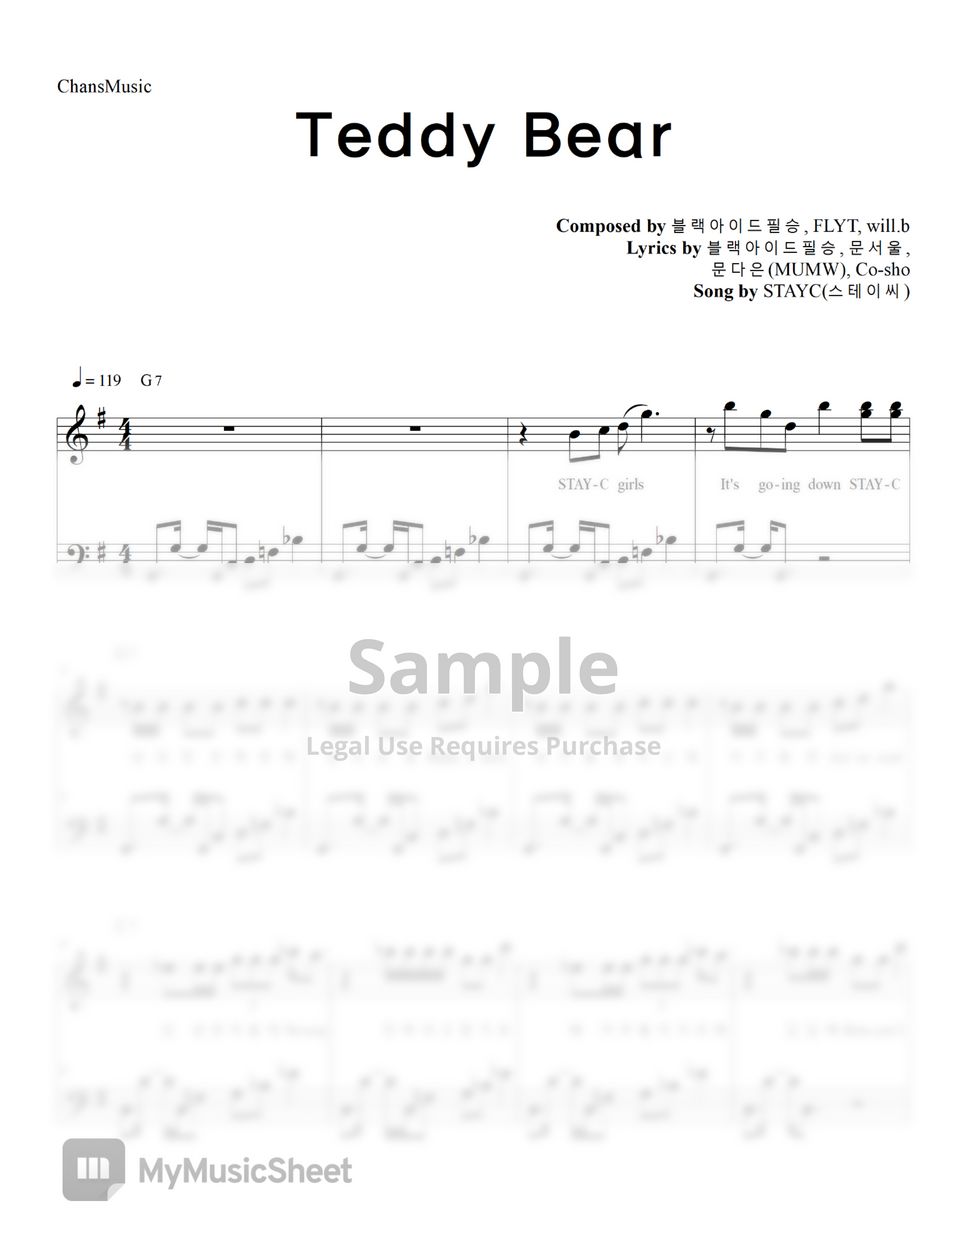 STAYC - Teddy Bear (Easy Version) by ChansMusic